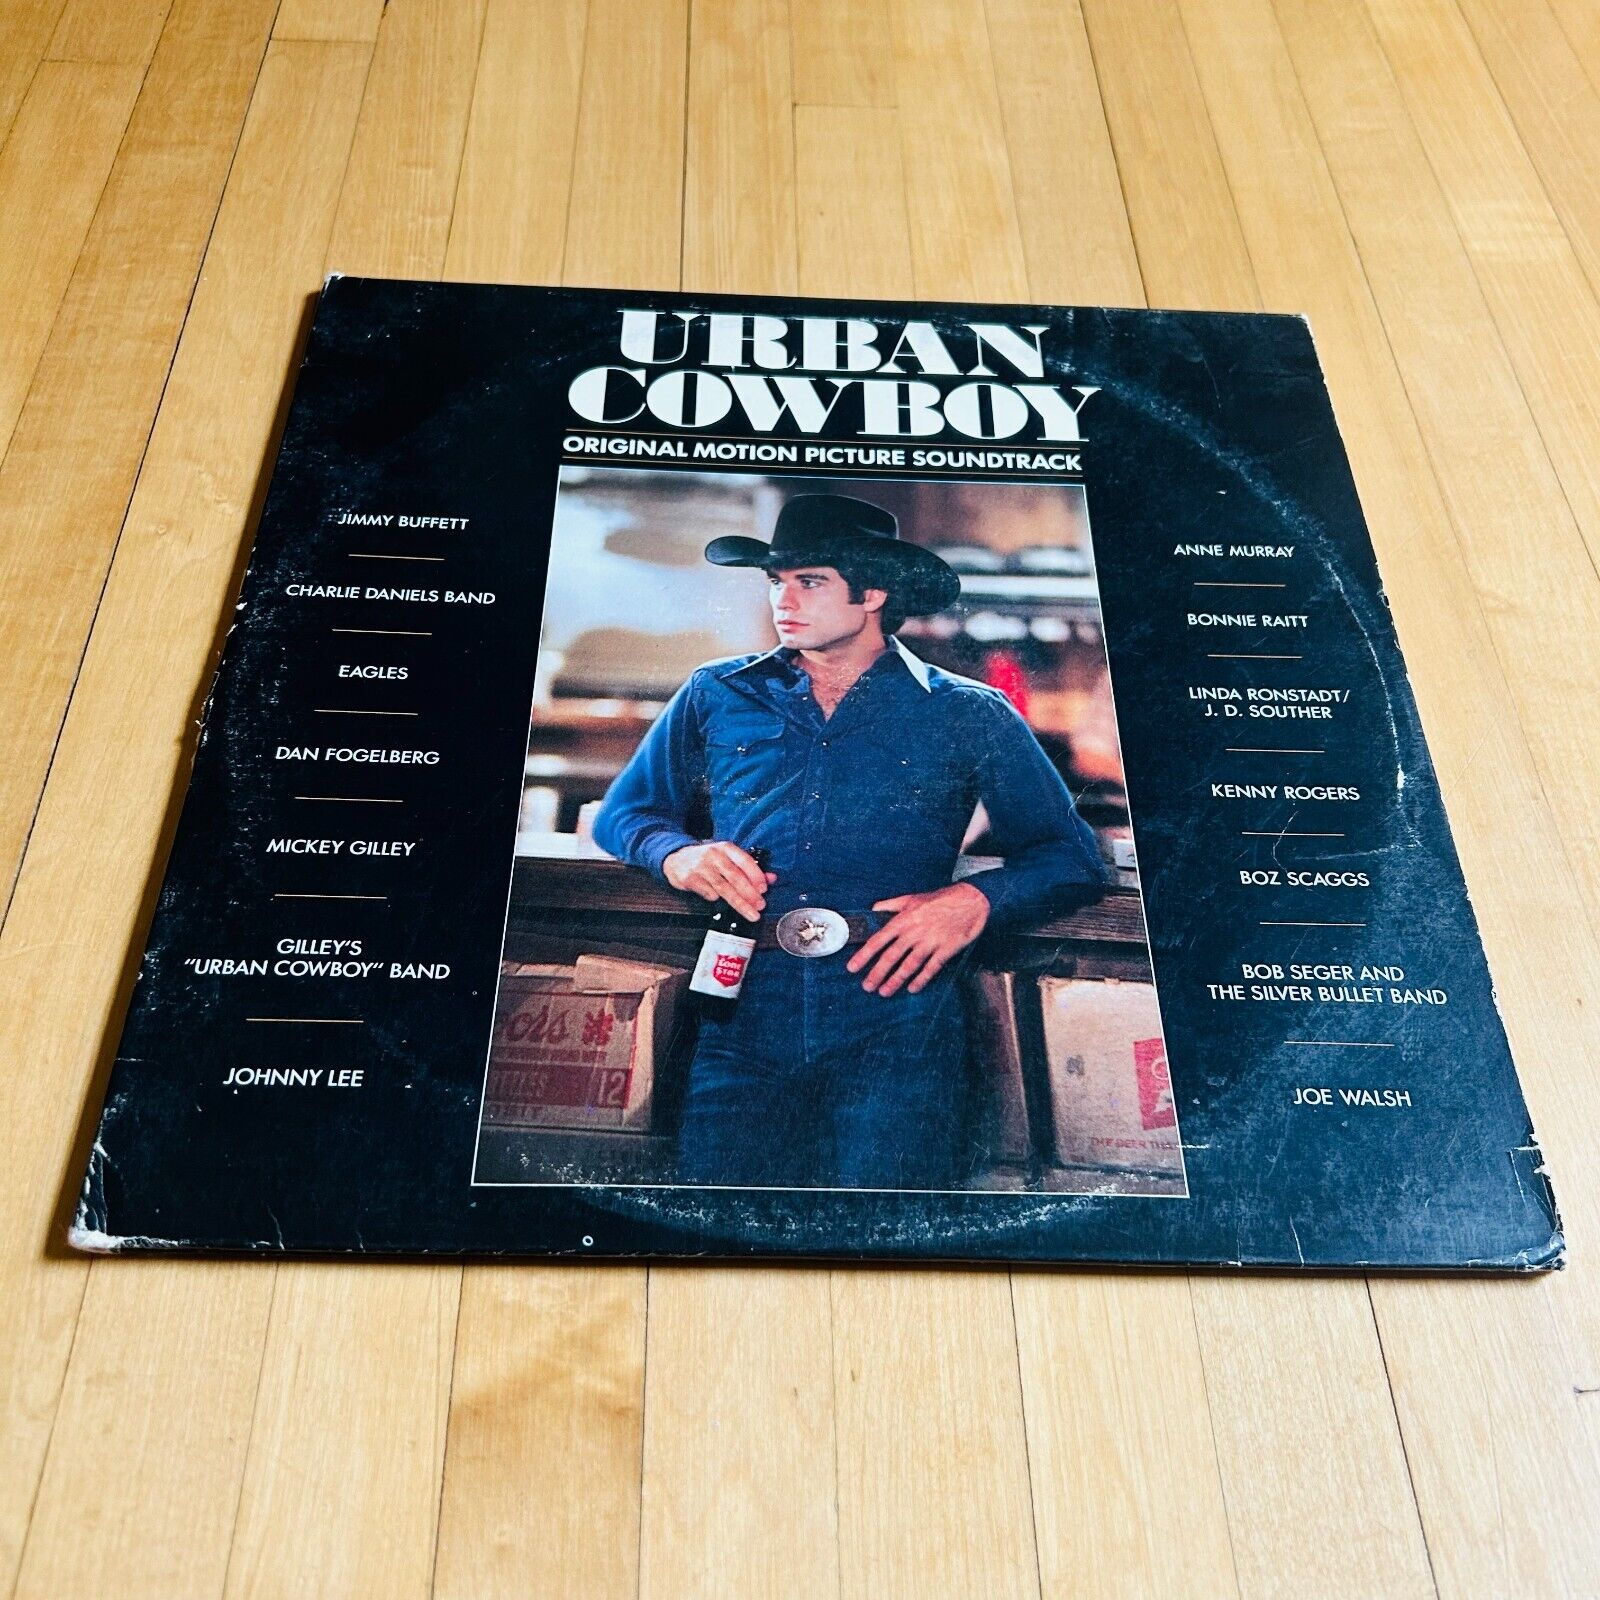 Urban Cowboy Original Motion Picture Soundtrack Vinyl Double LP DP-90002 G+/VG+